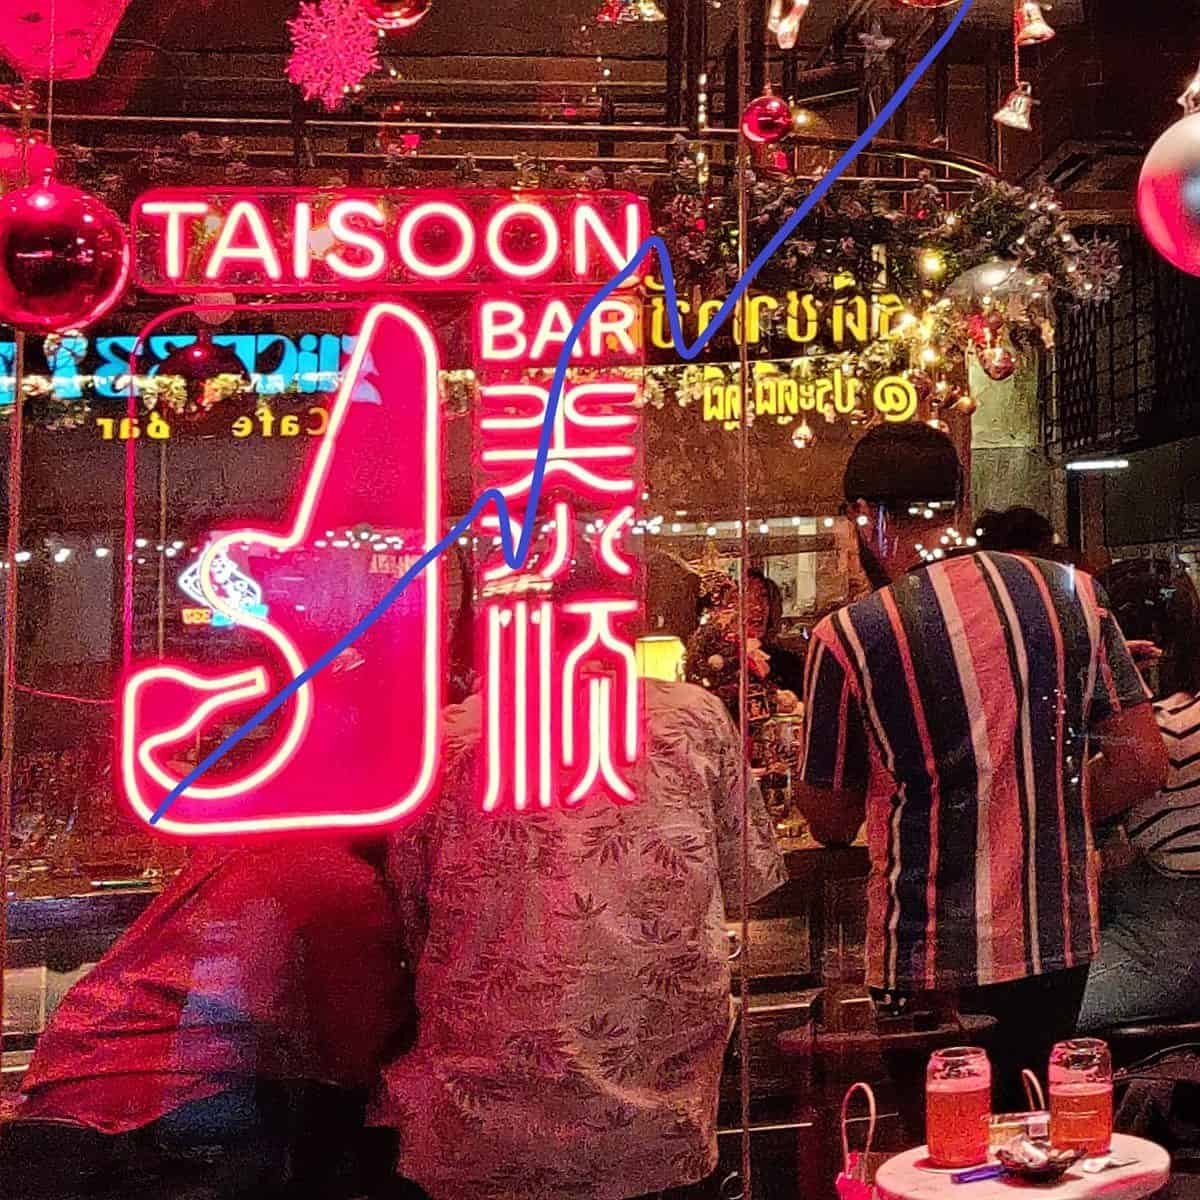 Tai Soon Bar - craft beer in Bangkok's Chinatown, Thailand